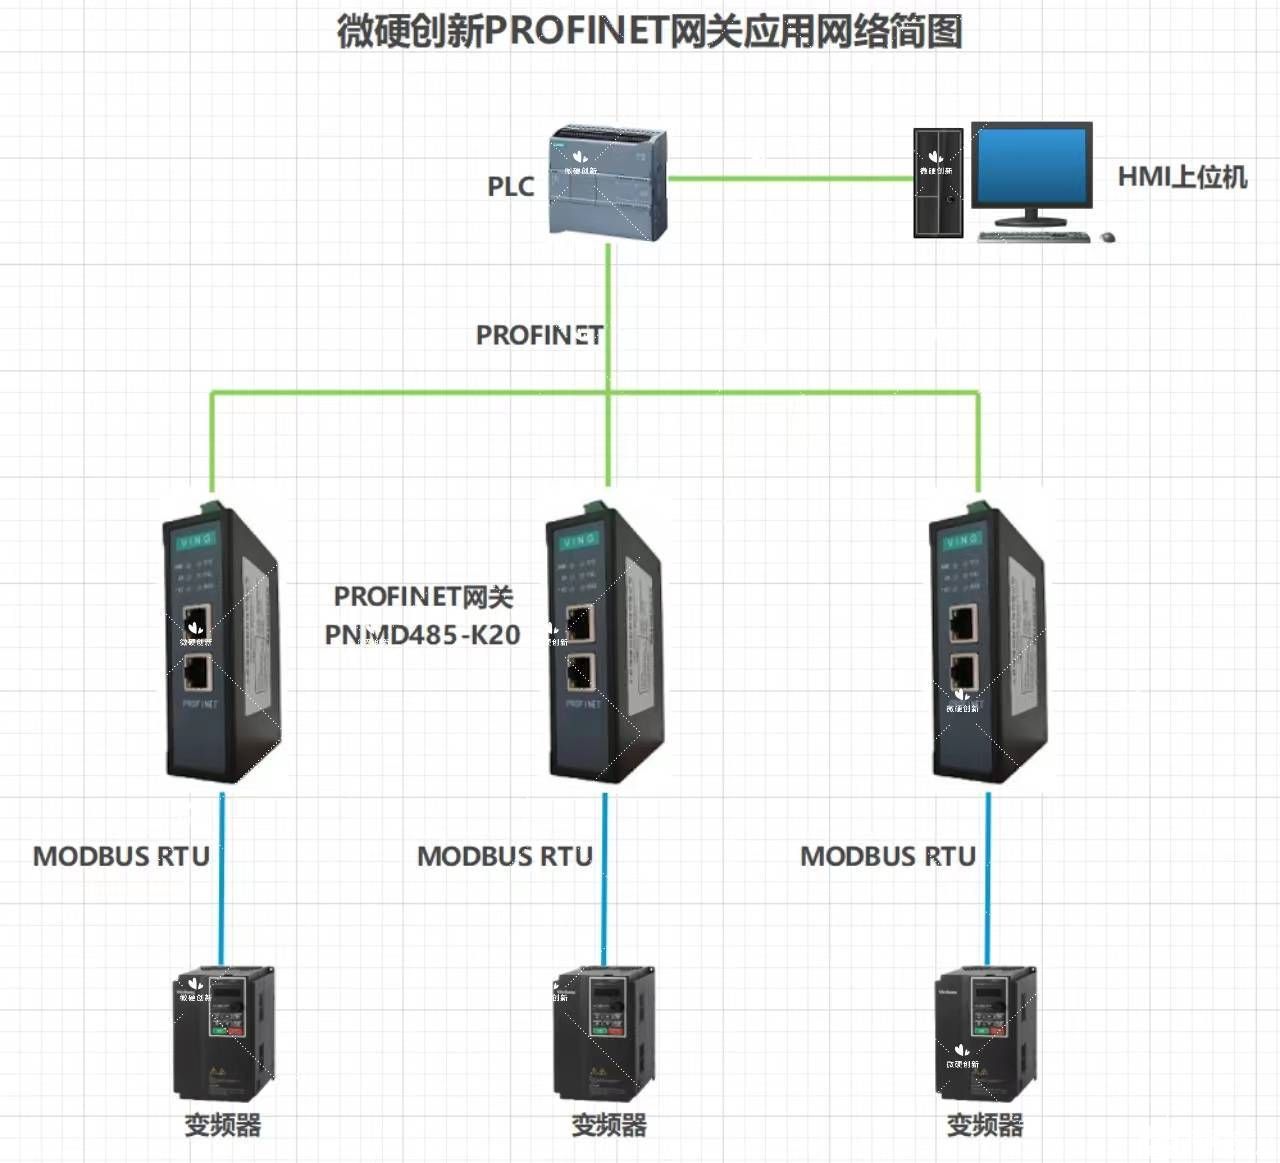 MODBUS轉PROFINET網關將plc與變頻器通訊配置法